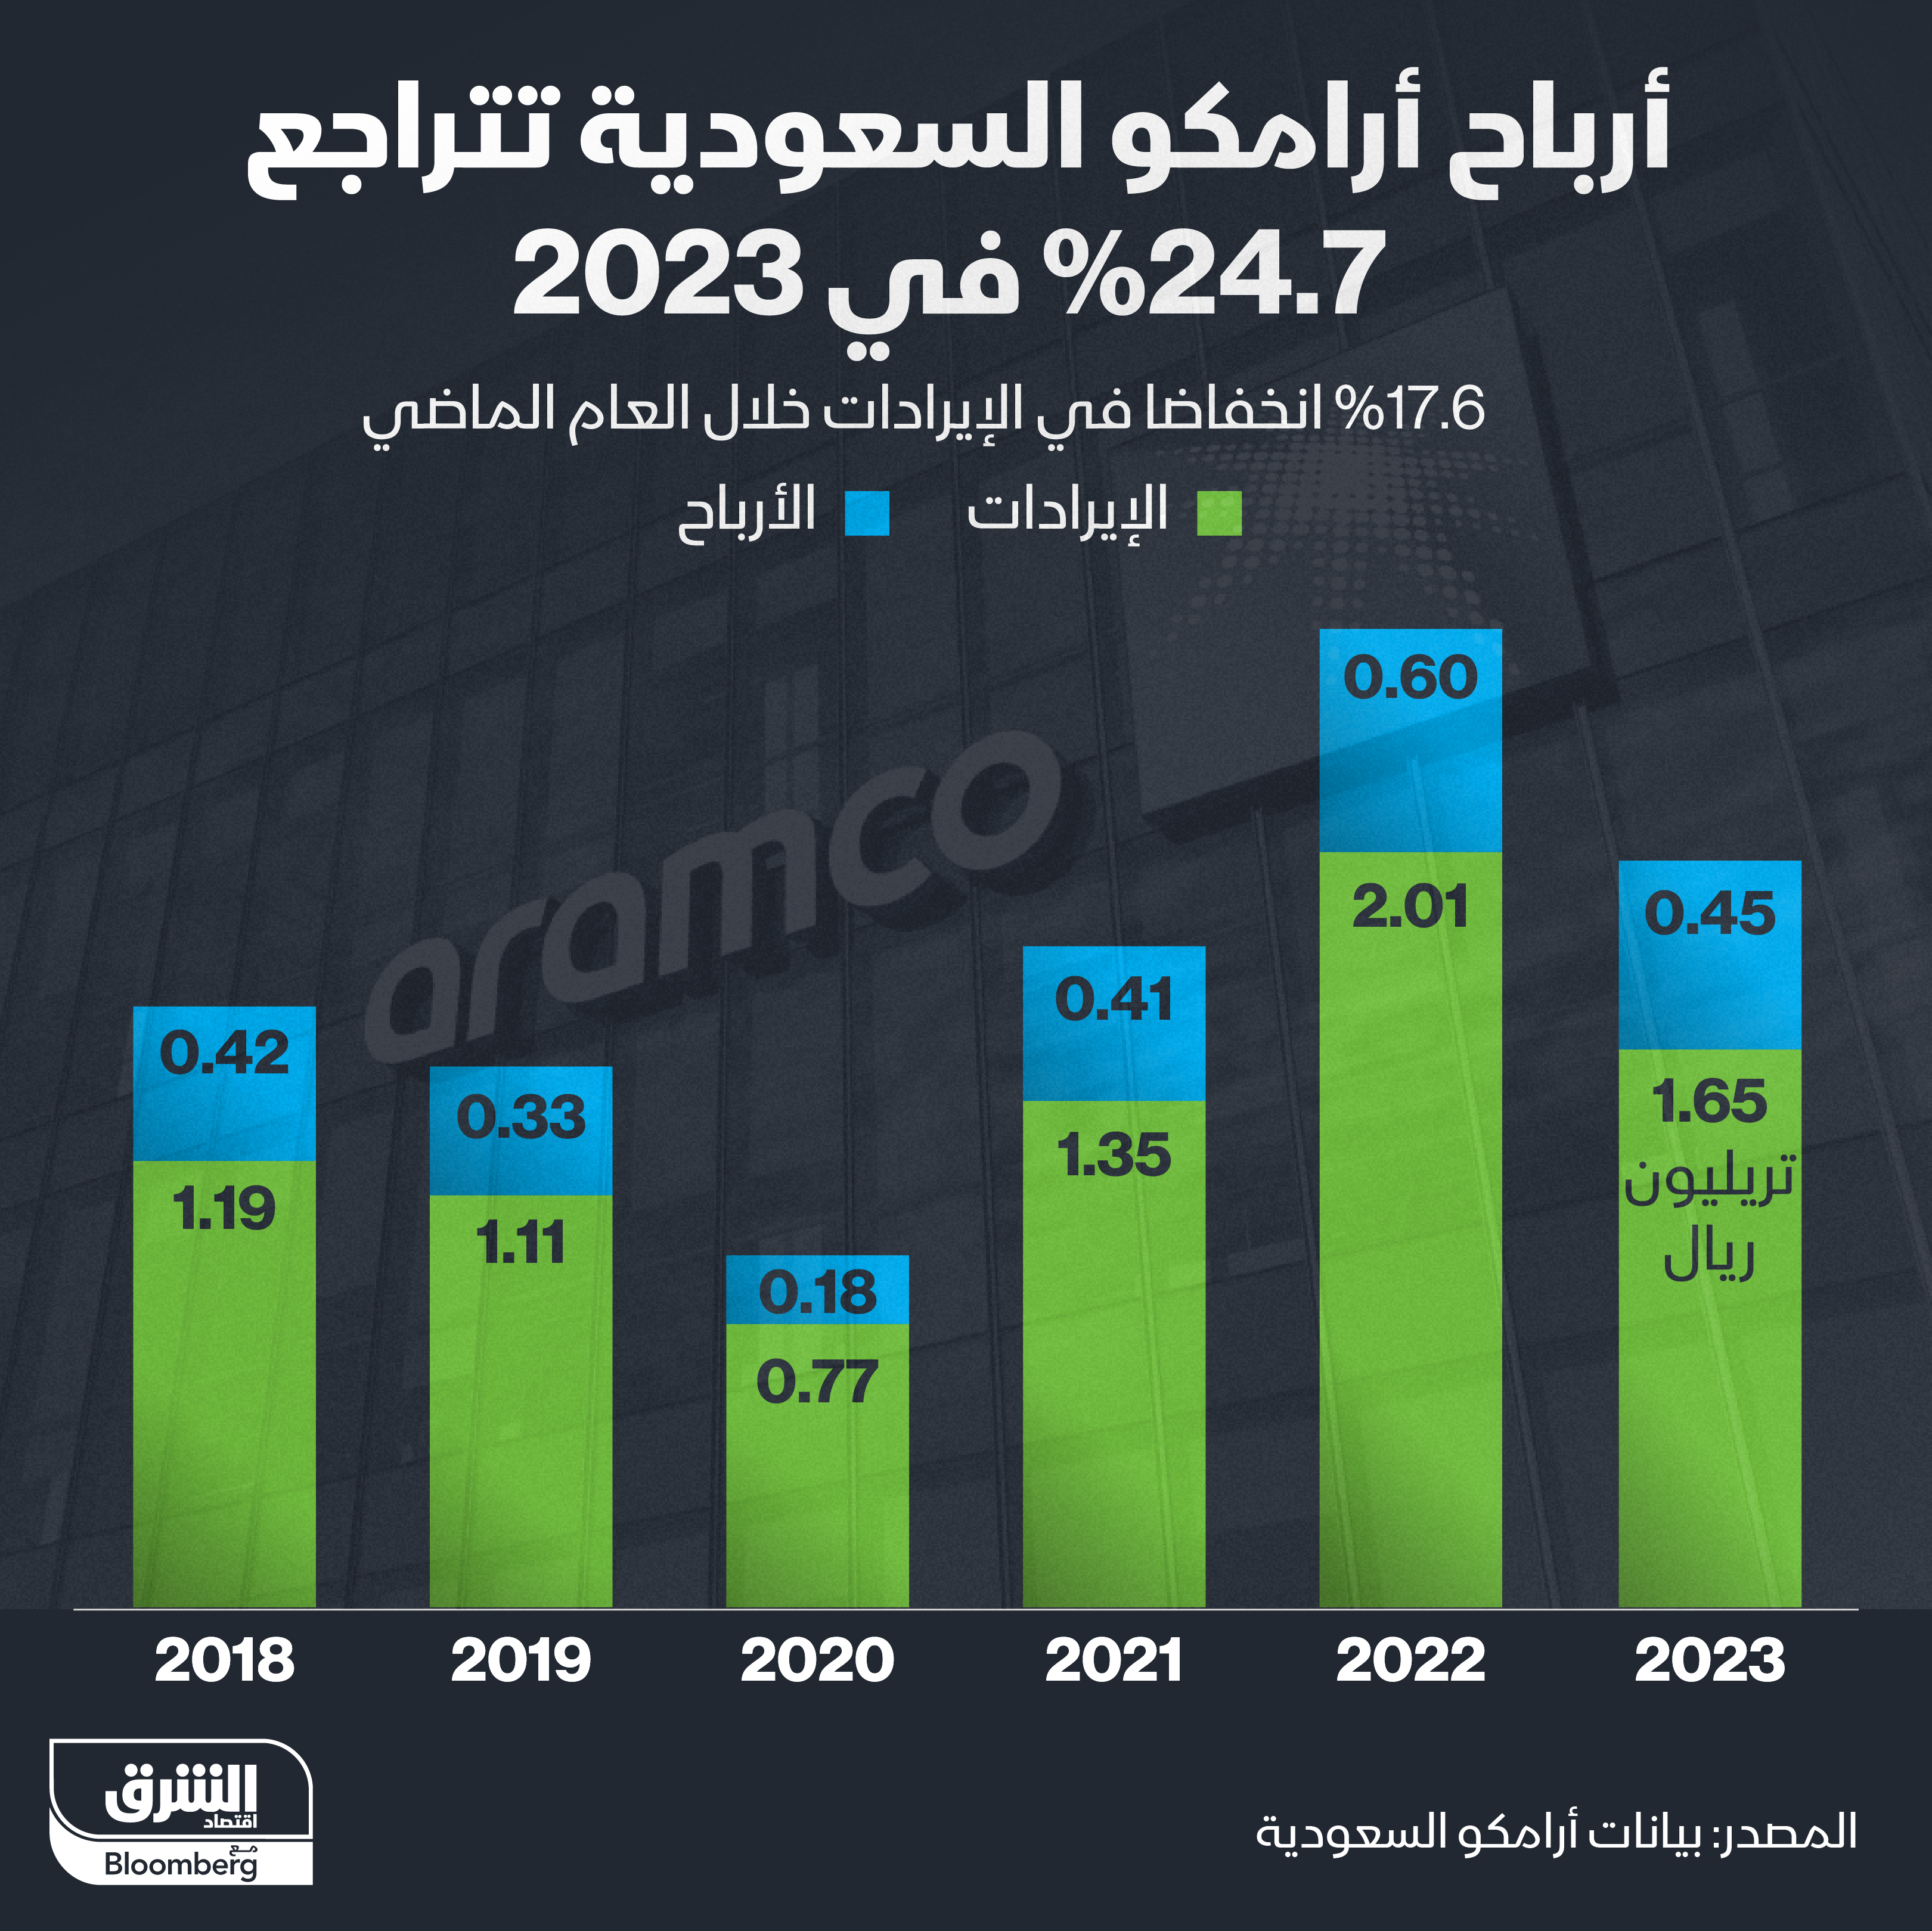 أرباح "أرامكو" السعودية السنوية خلال السنوات الست الأخيرة